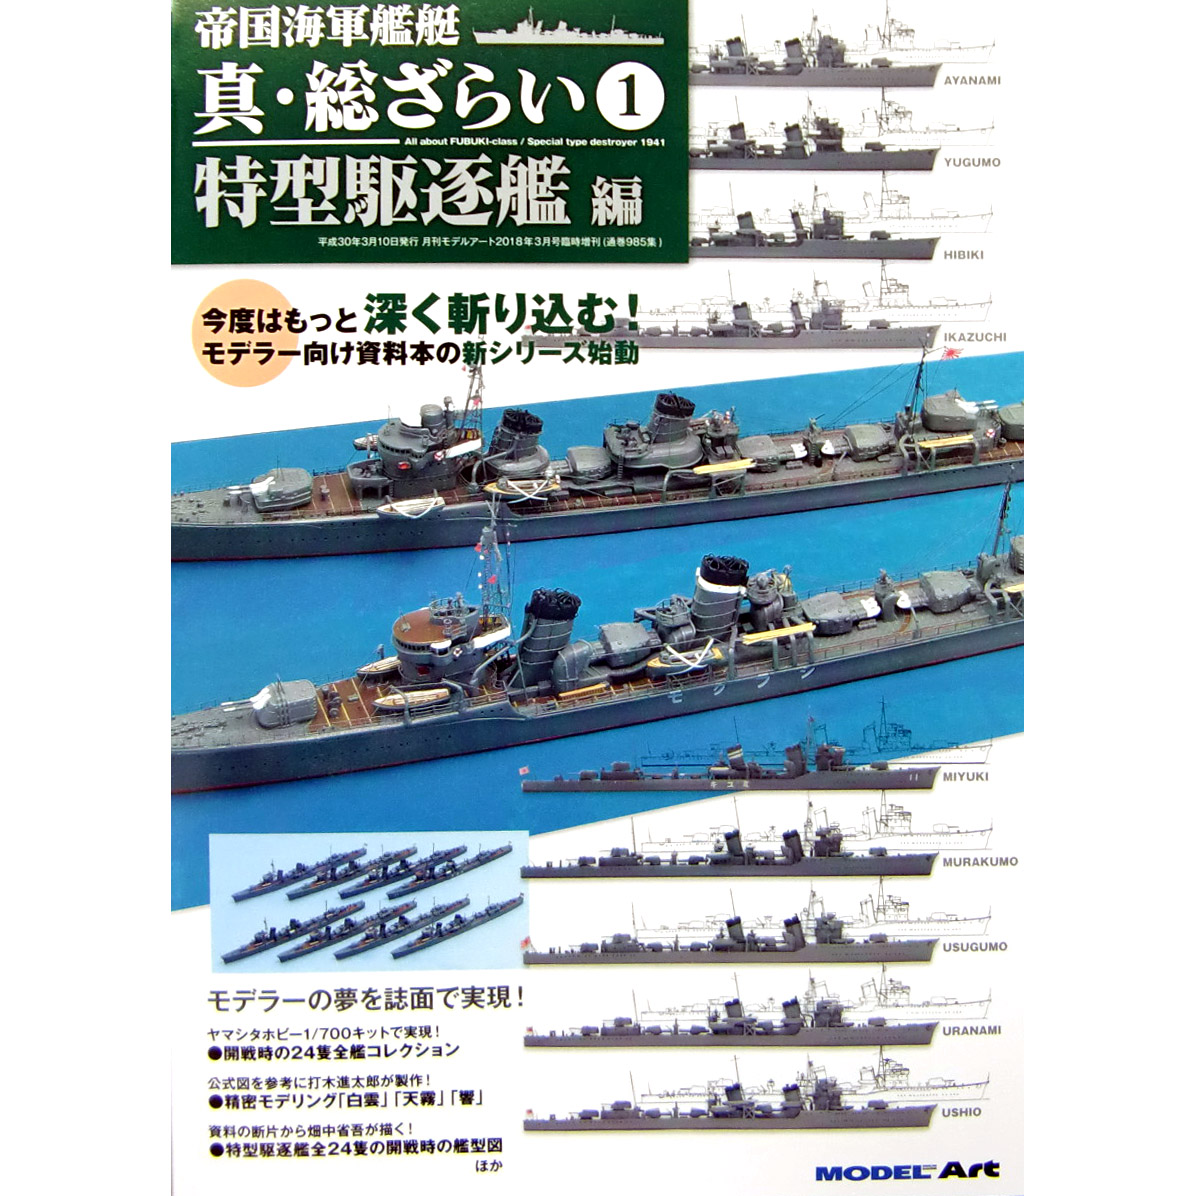 モデルアート 新シリーズ 帝国海軍艦艇 真・総ざらい1 特型駆逐艦編 入荷しました。